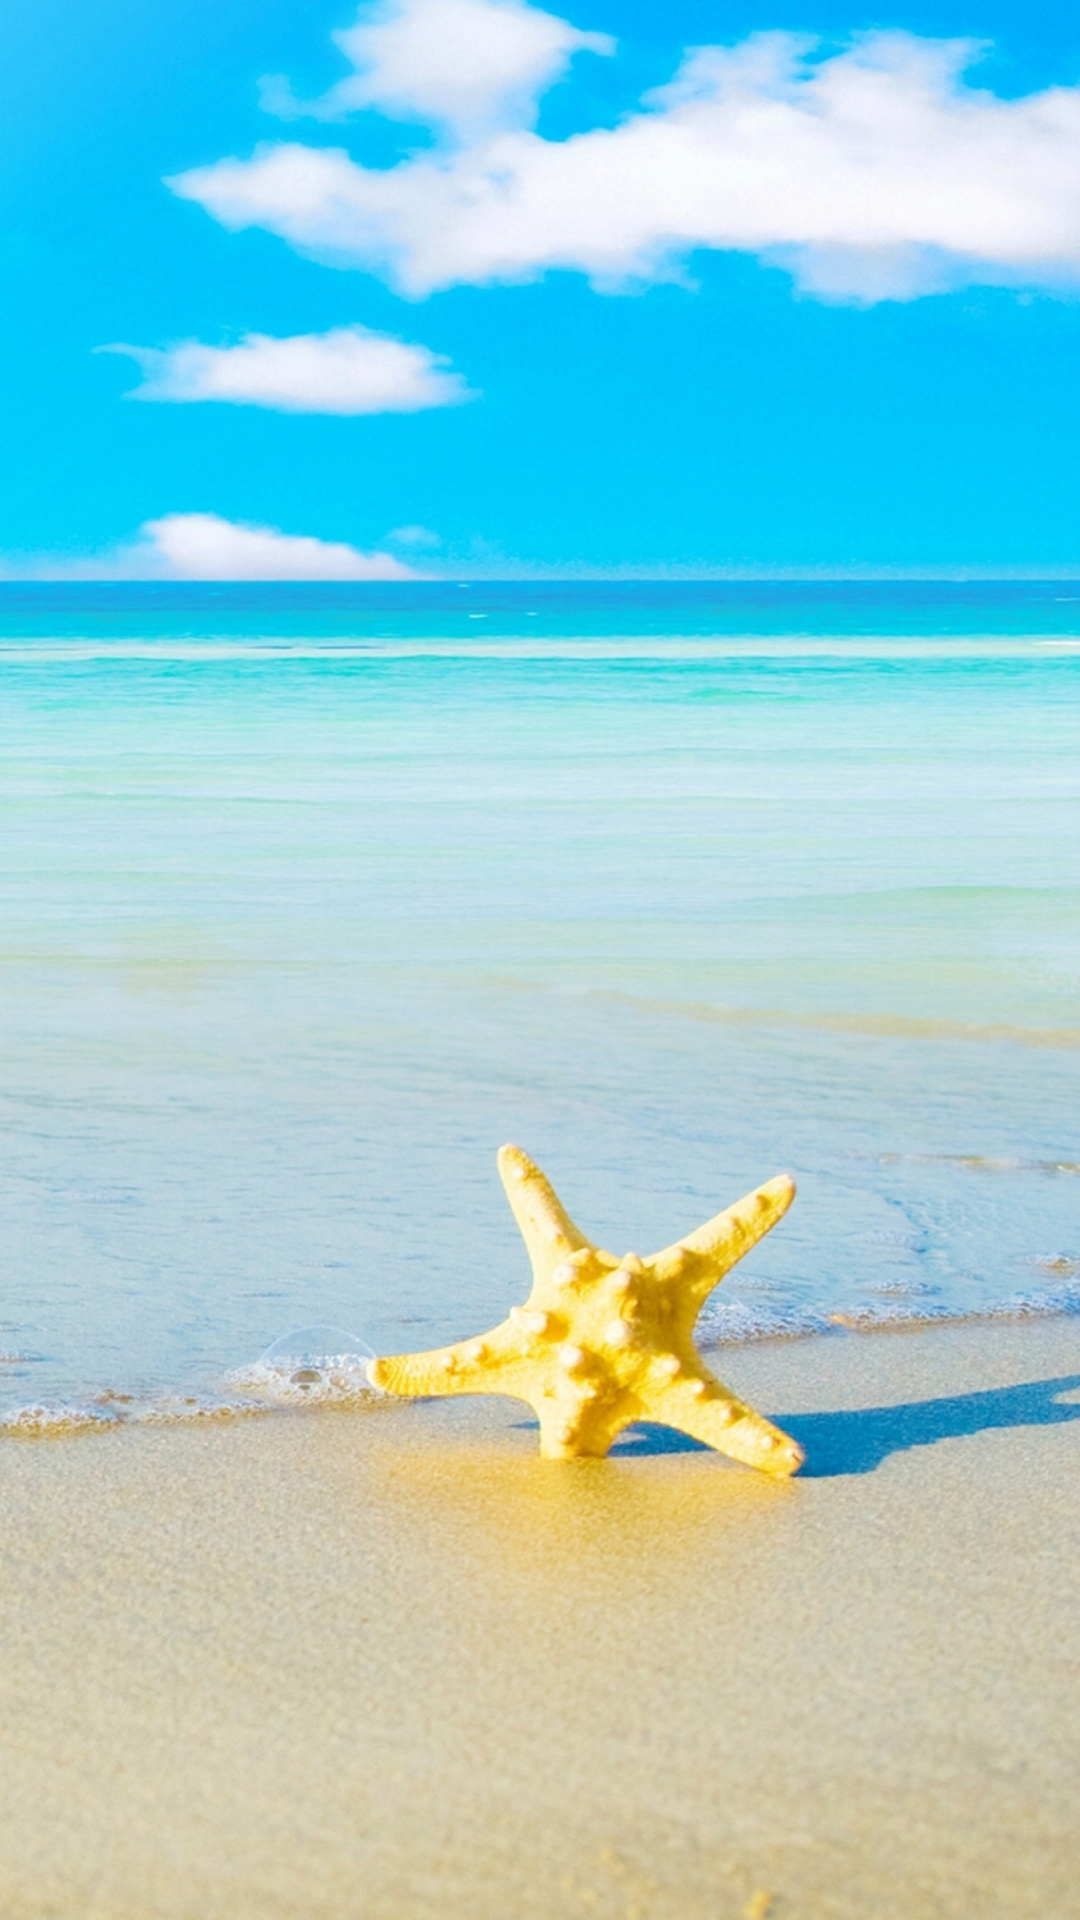 Das Starfish at summer beach Wallpaper 1080x1920